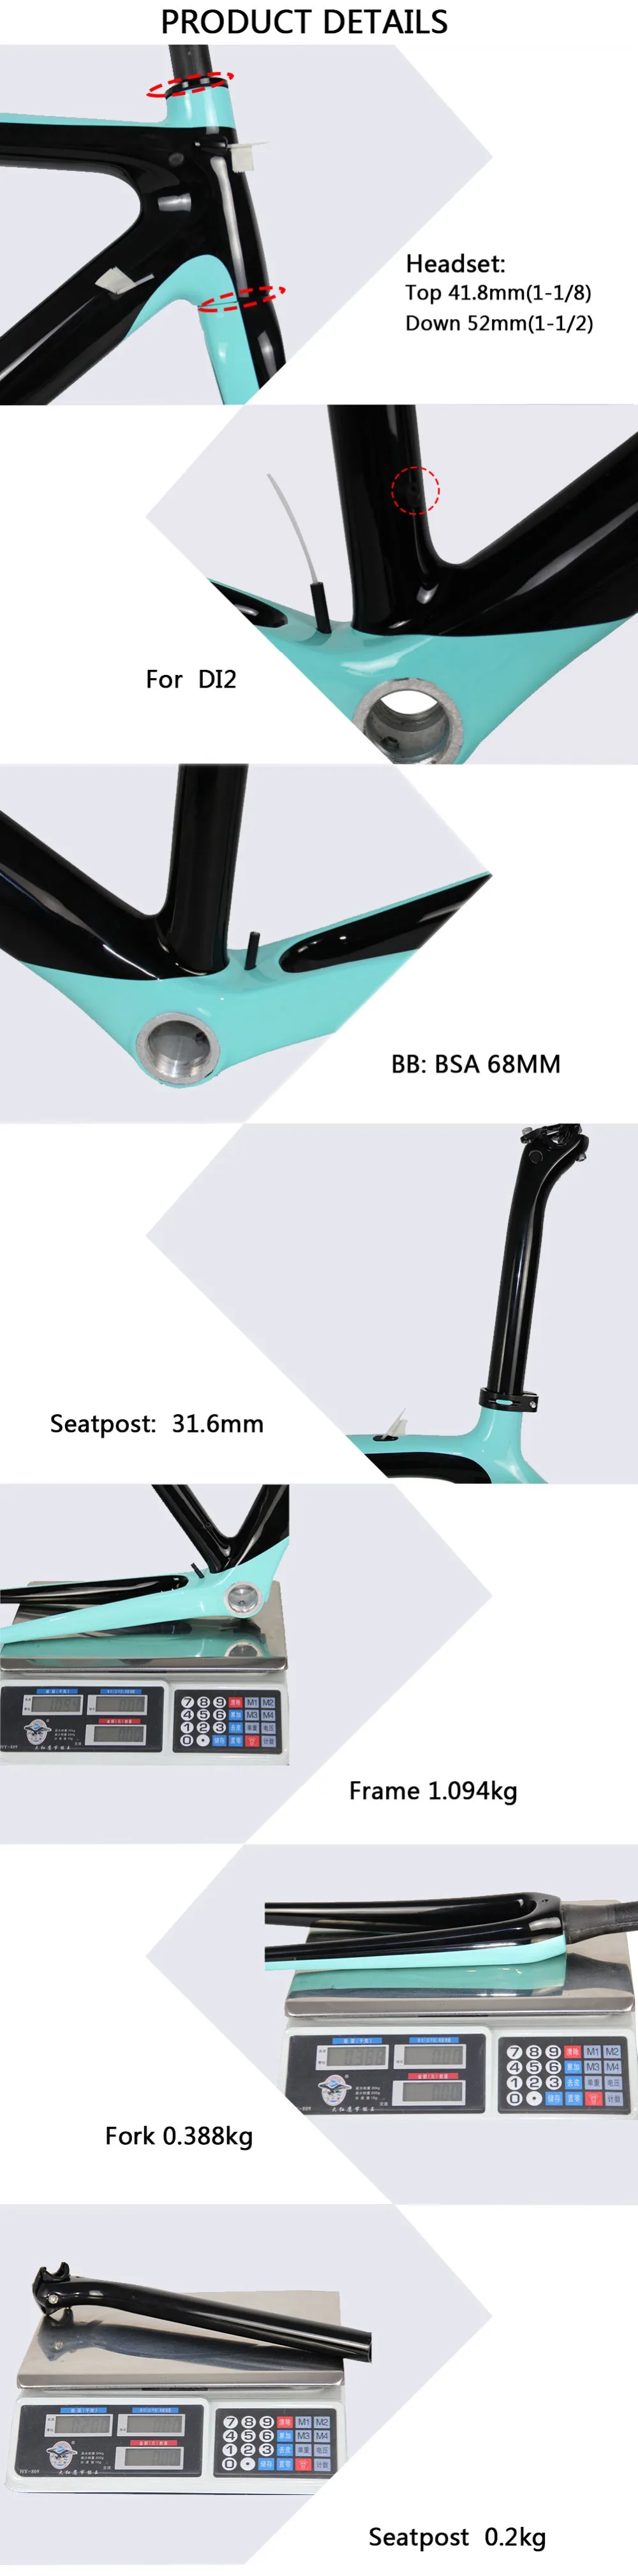 Spcycle новая модель дороги углерода велосипеда Di2 и механические гоночный велосипед фреймов BSA Размеры 50/53/ 55 см 9 Цвета доступны